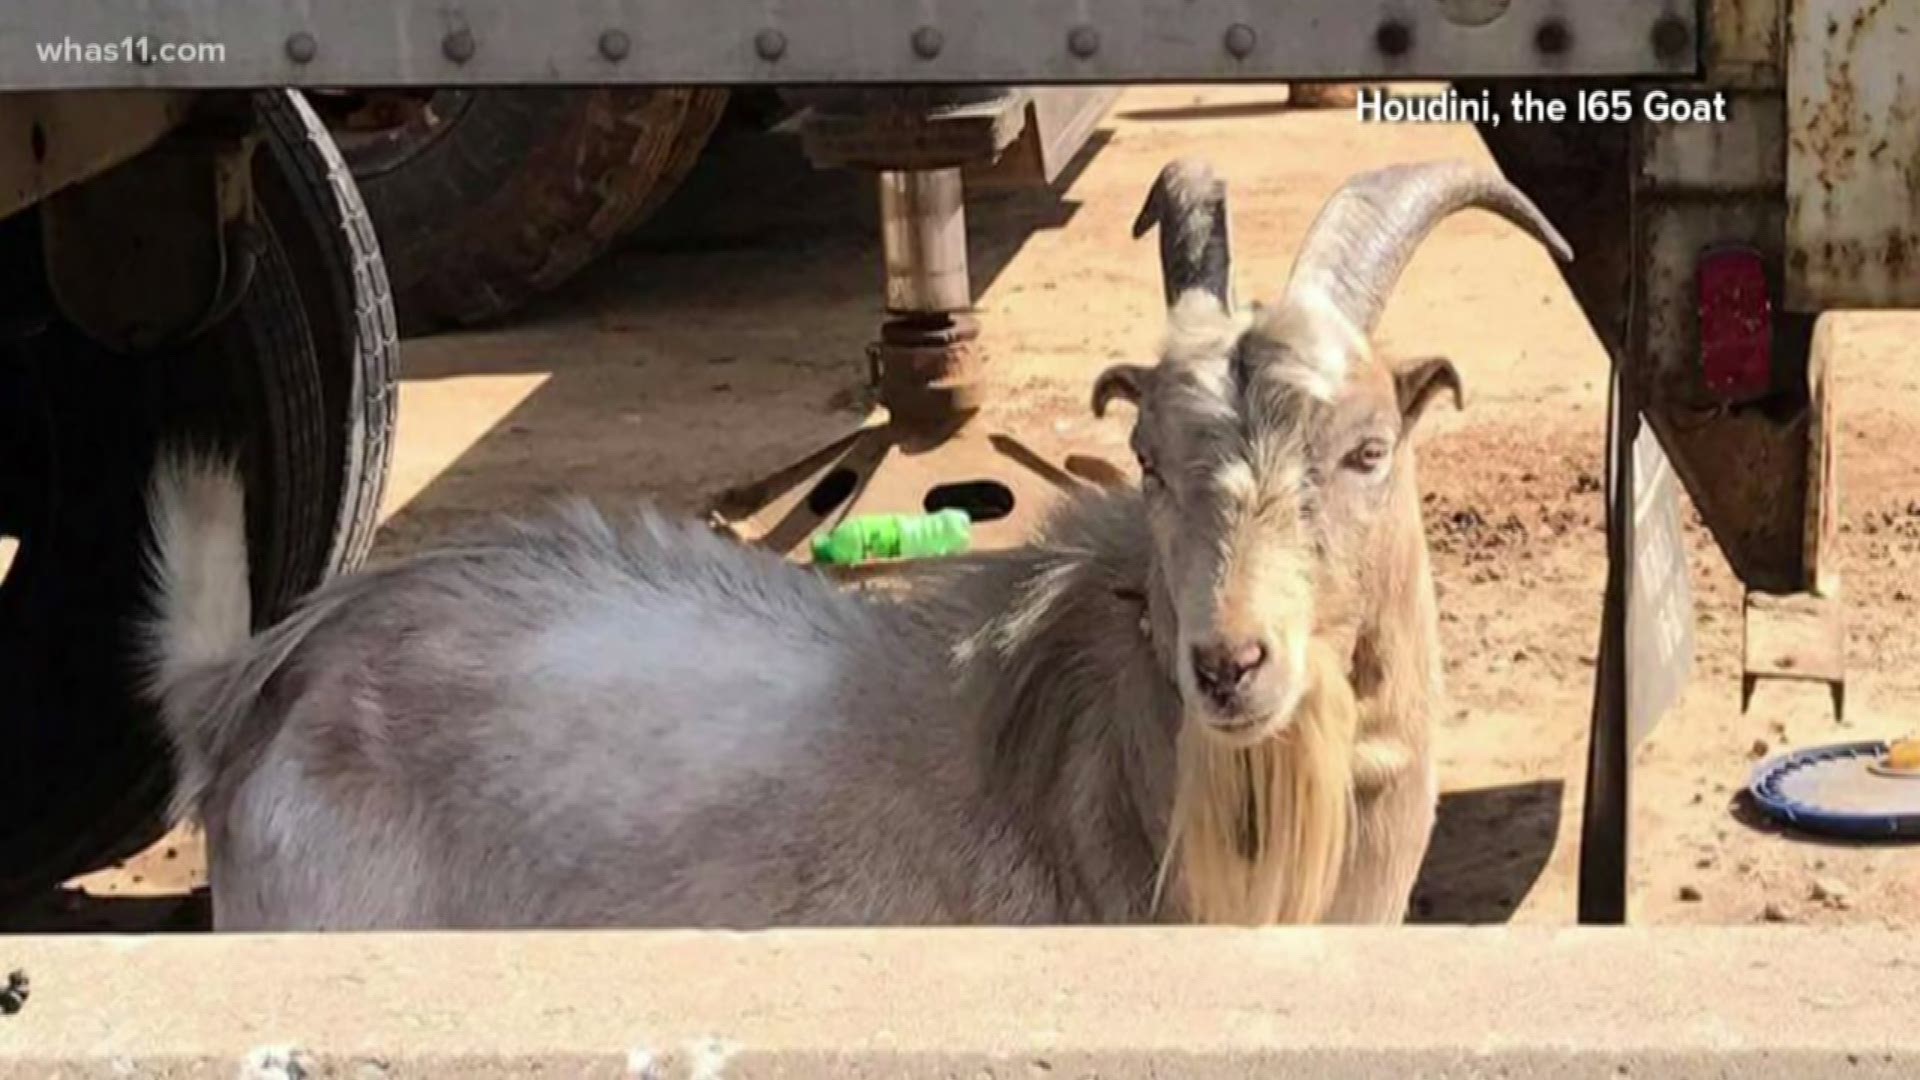 Houdini, the I-65 goat was injured on I-65